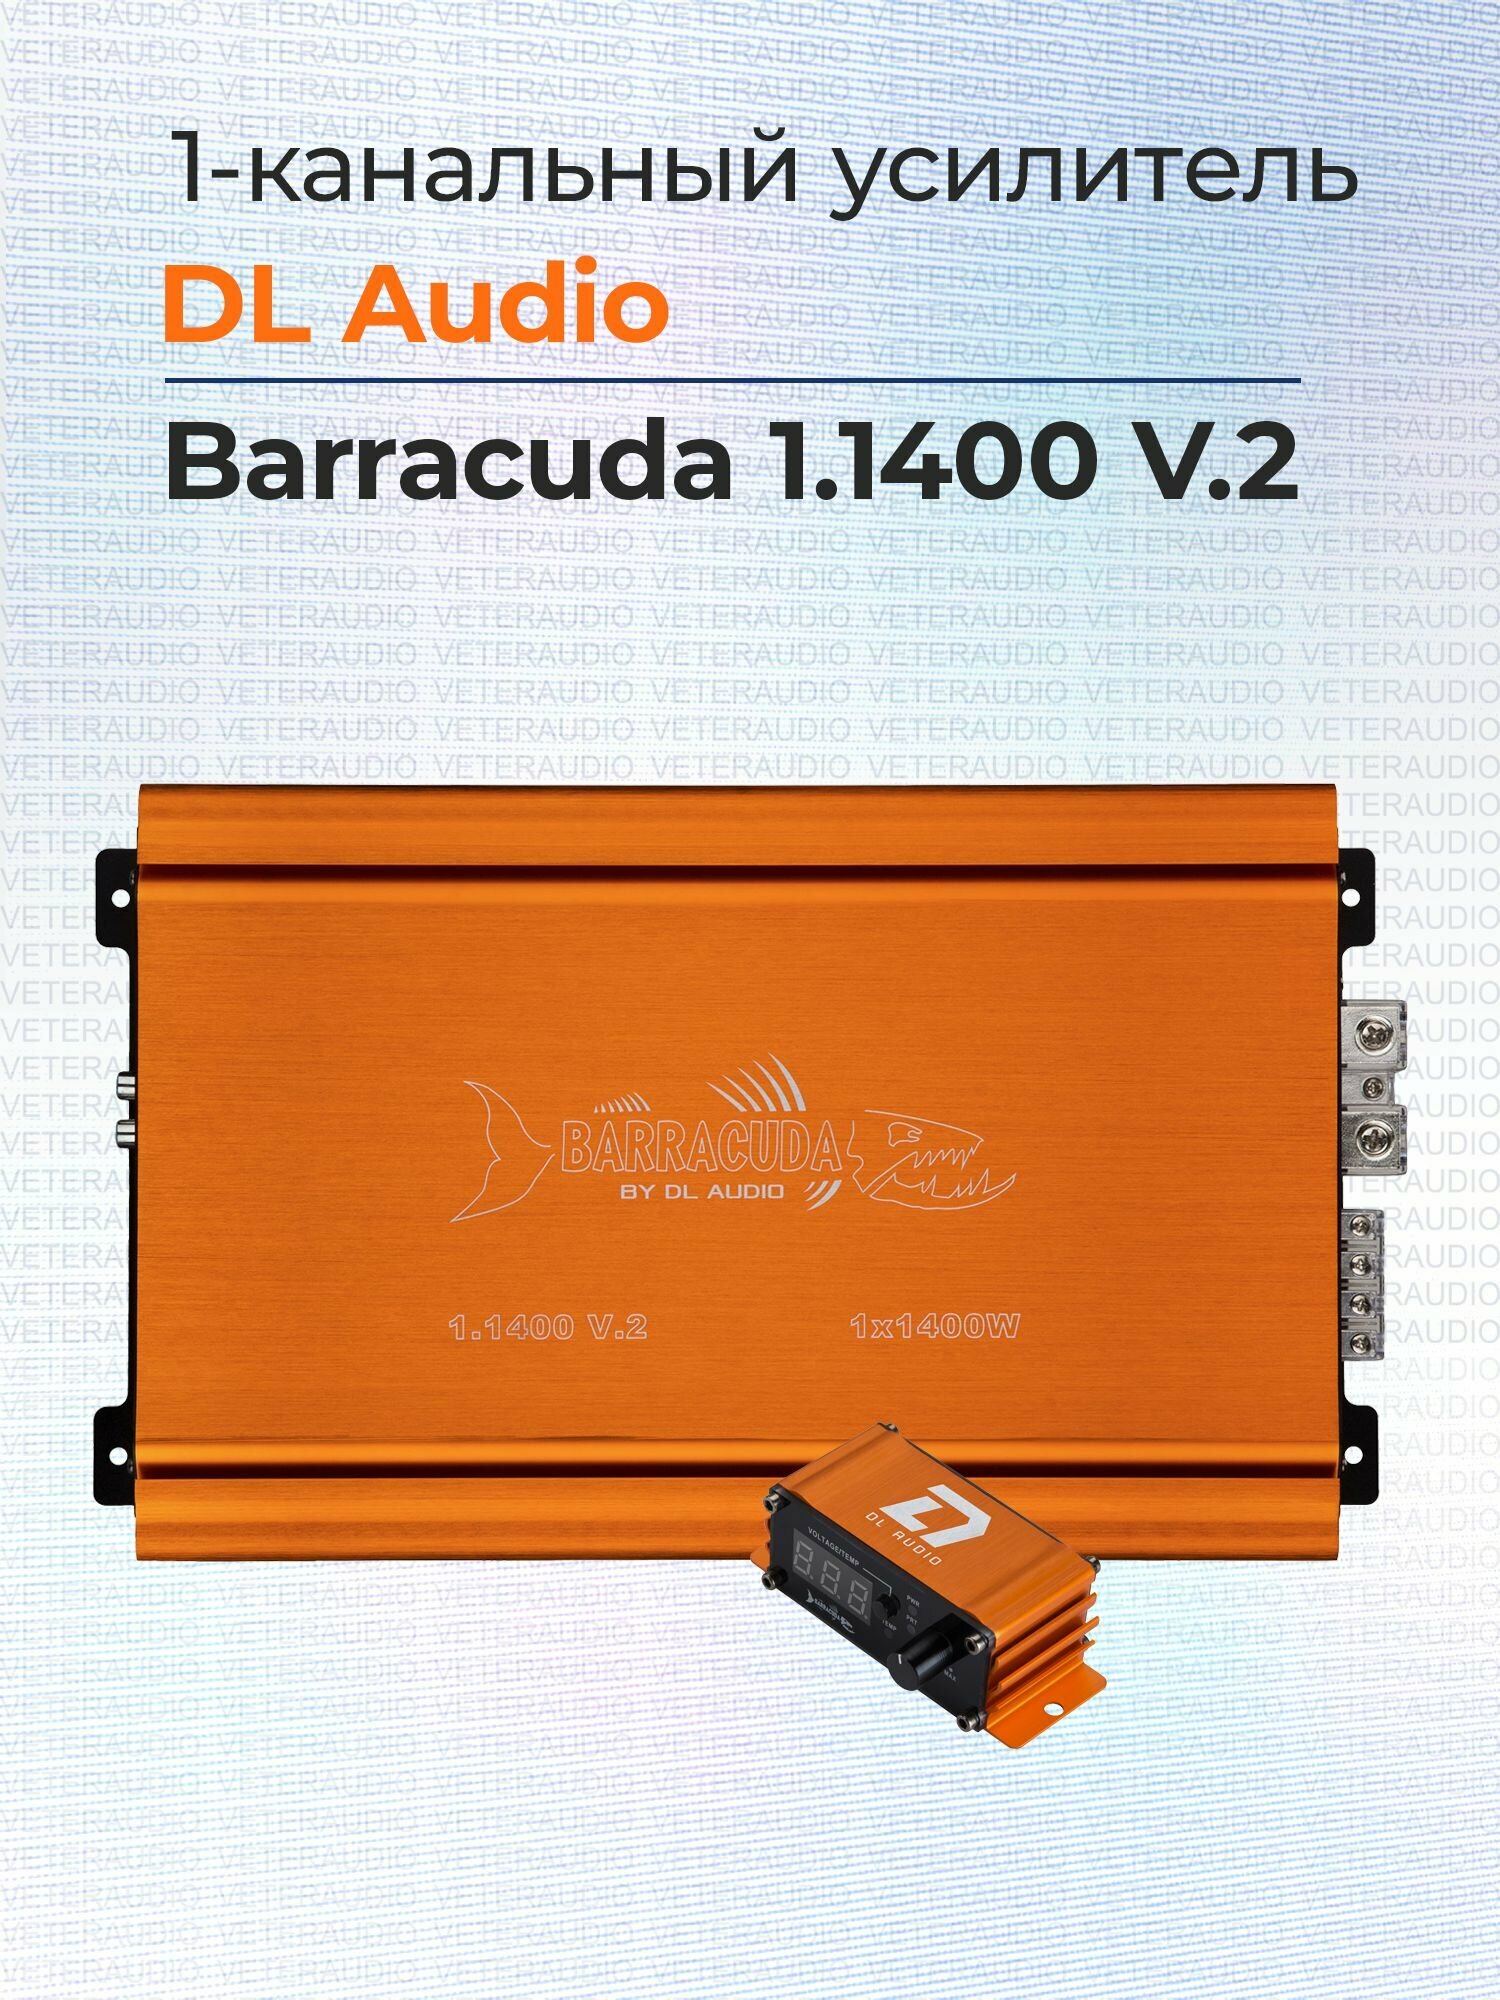 Усилитель 1-канальный DL Audio Barracuda 1.1400 V.2